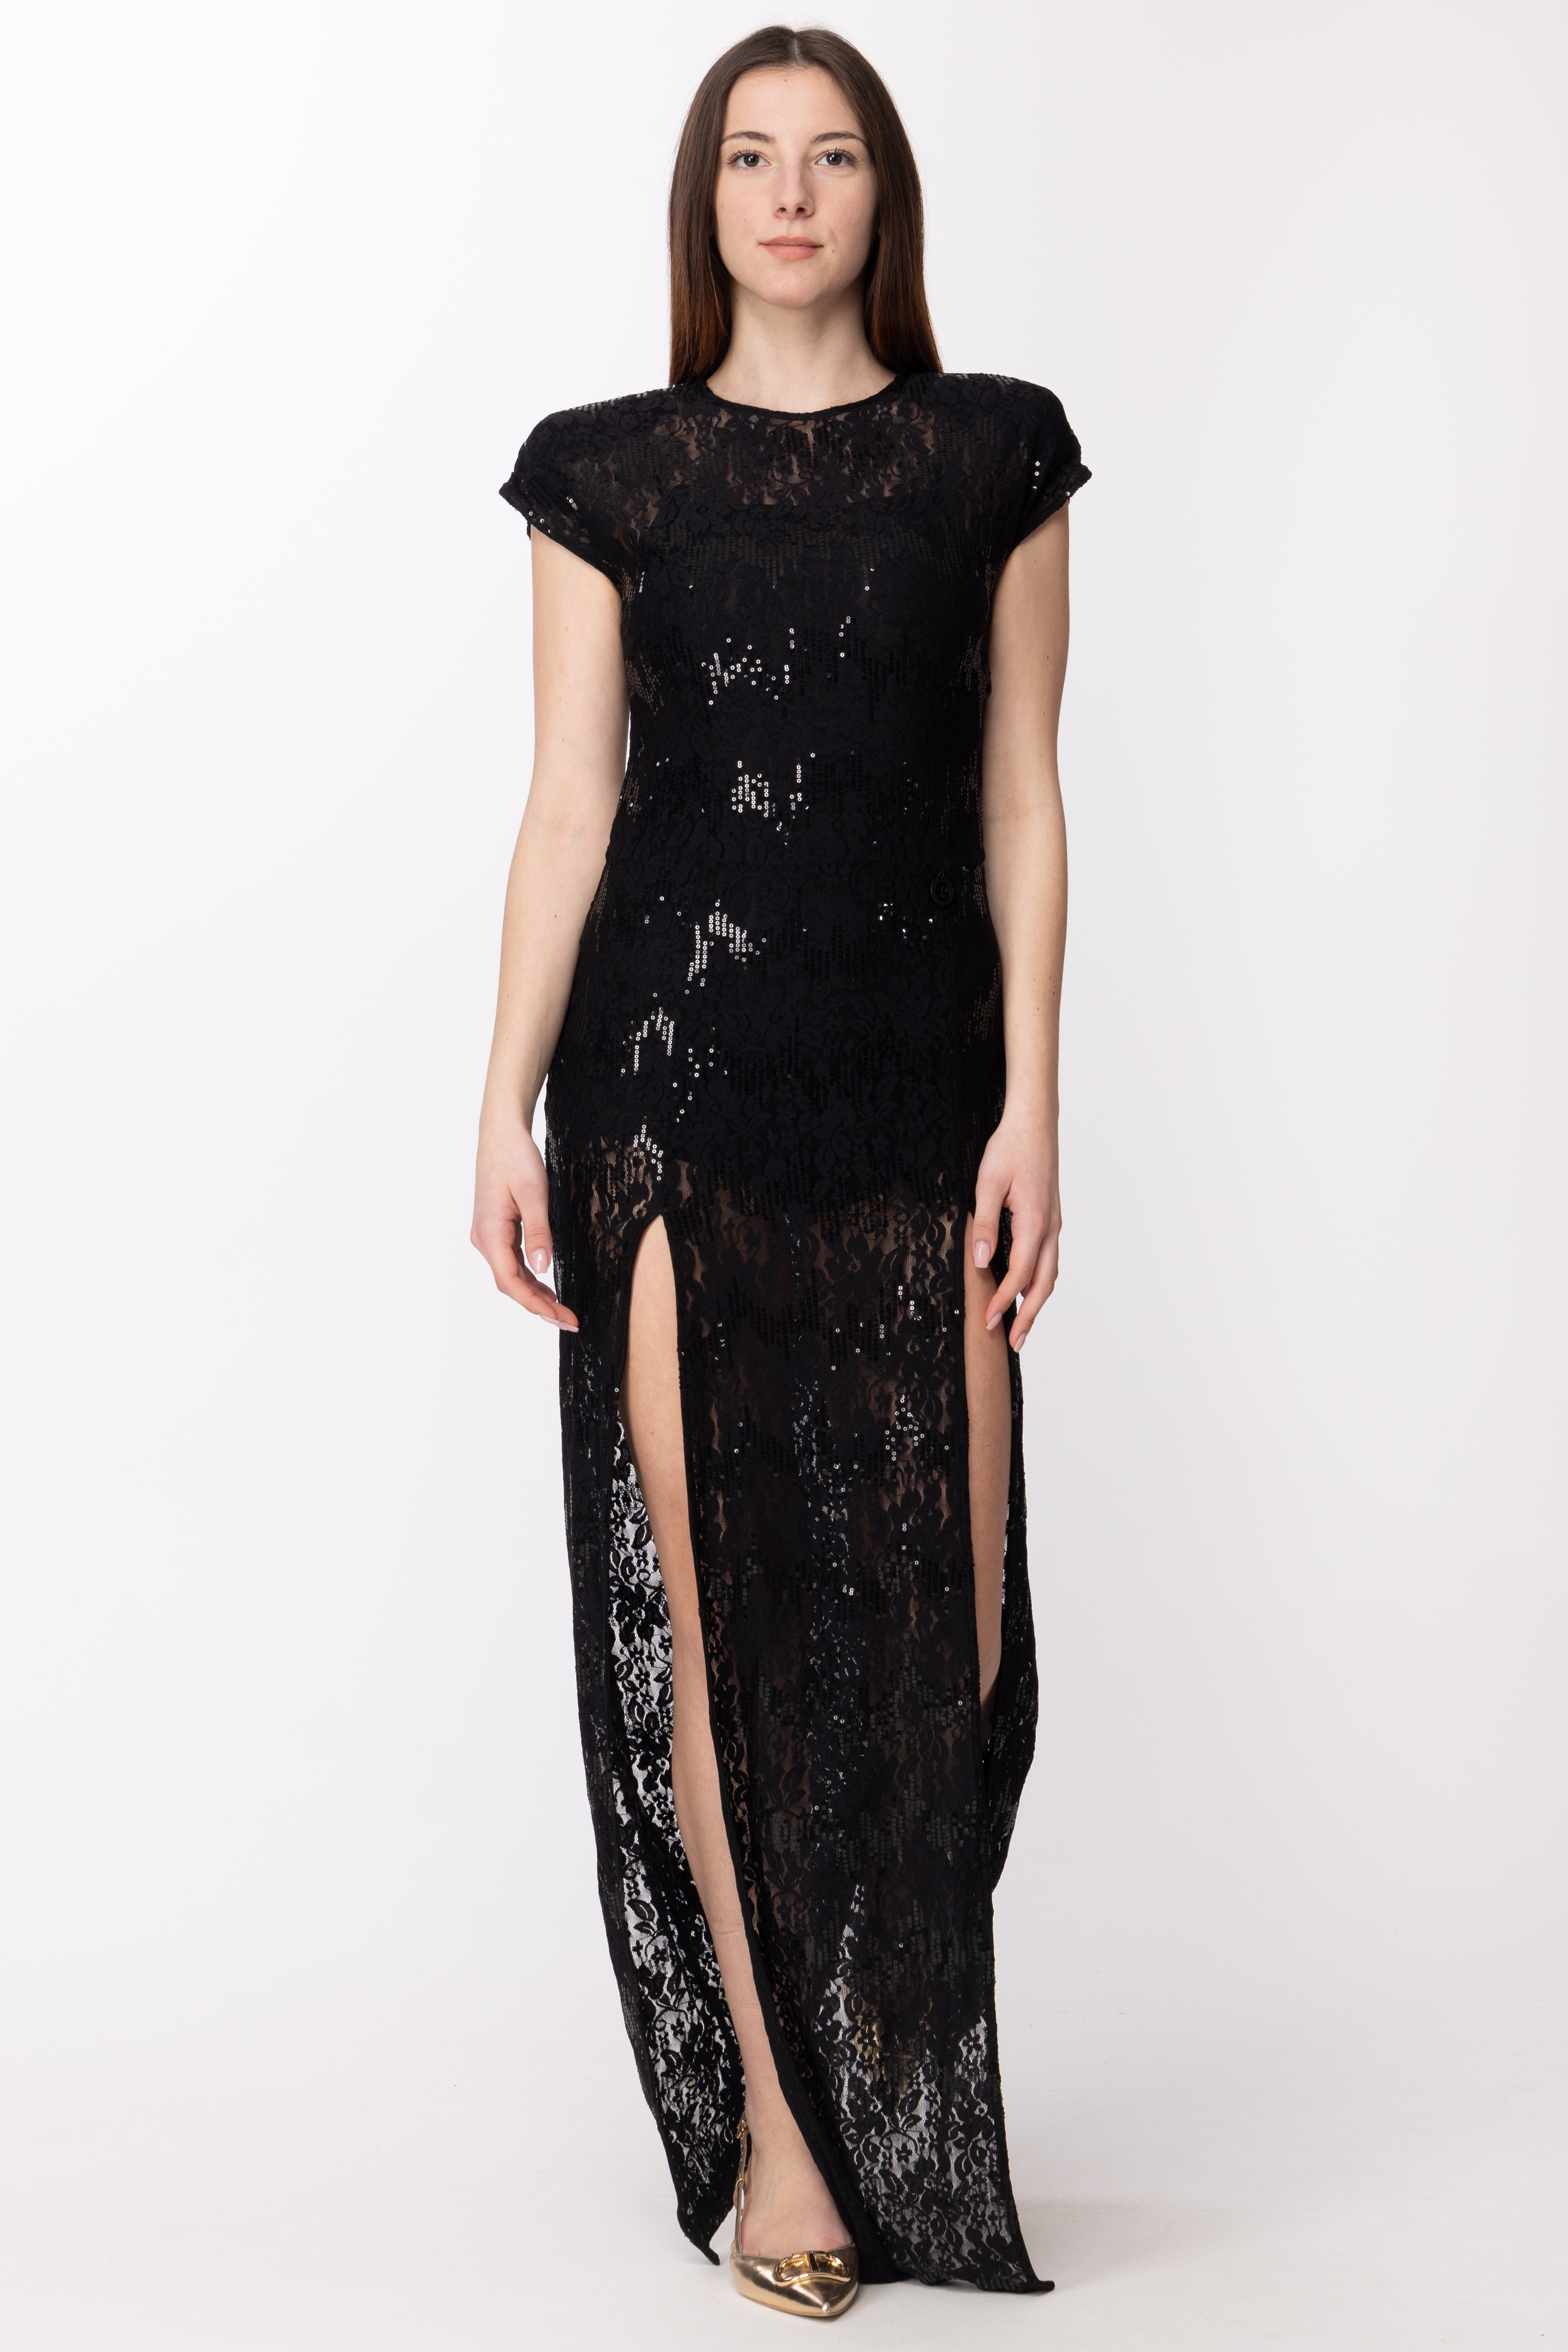 Vorschau: Gaelle Paris Kleid mit Spitze und Pailletten Nero